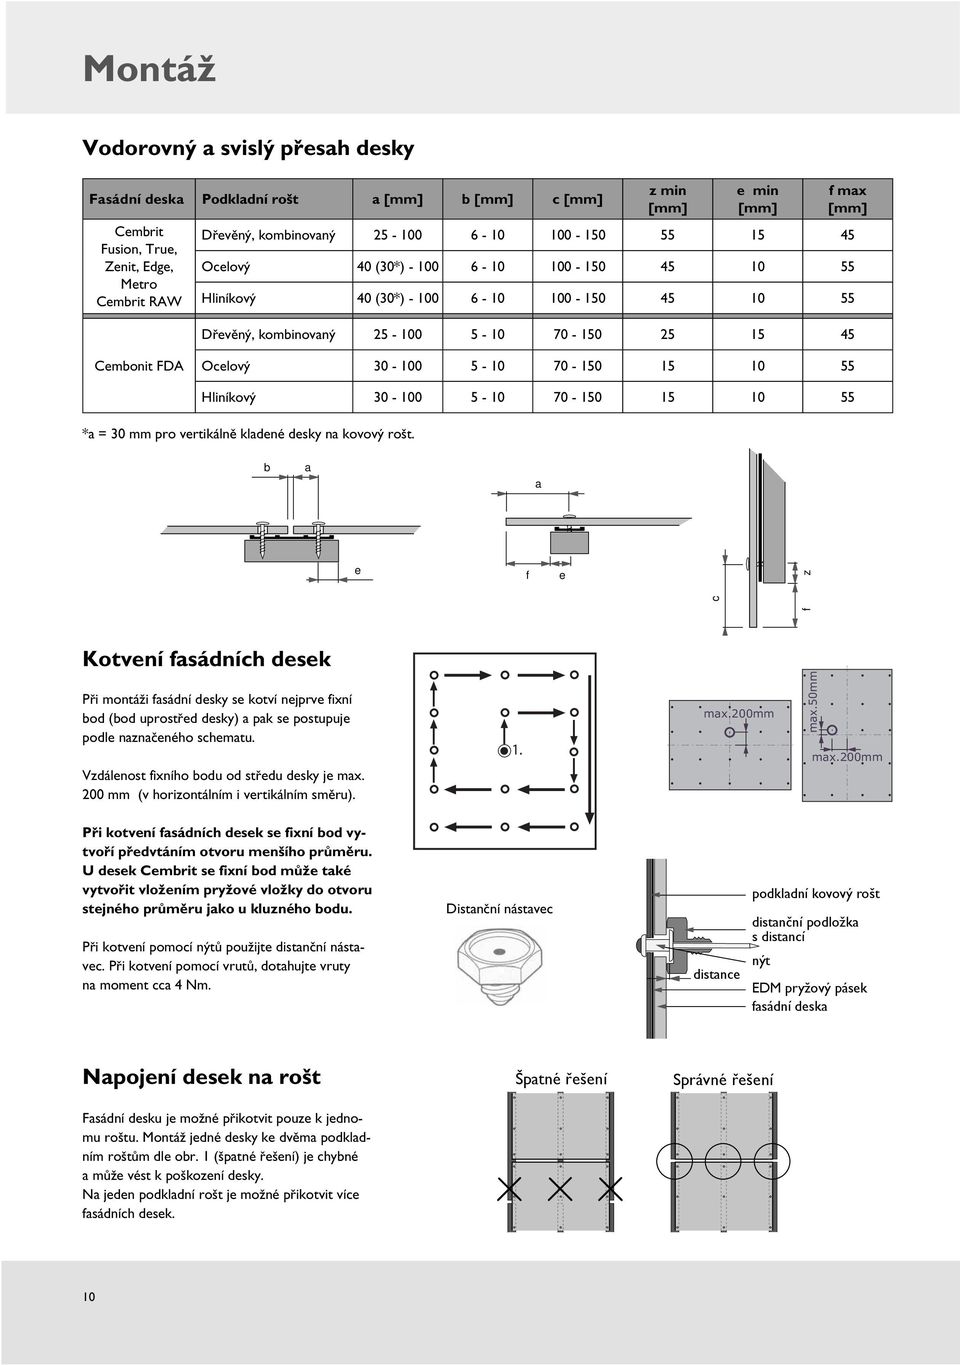 5-10 70-150 15 10 55 Hliníkový 30-100 5-10 70-150 15 10 55 *a = 30 mm pro vertikálně kladené desky na kovový rošt.